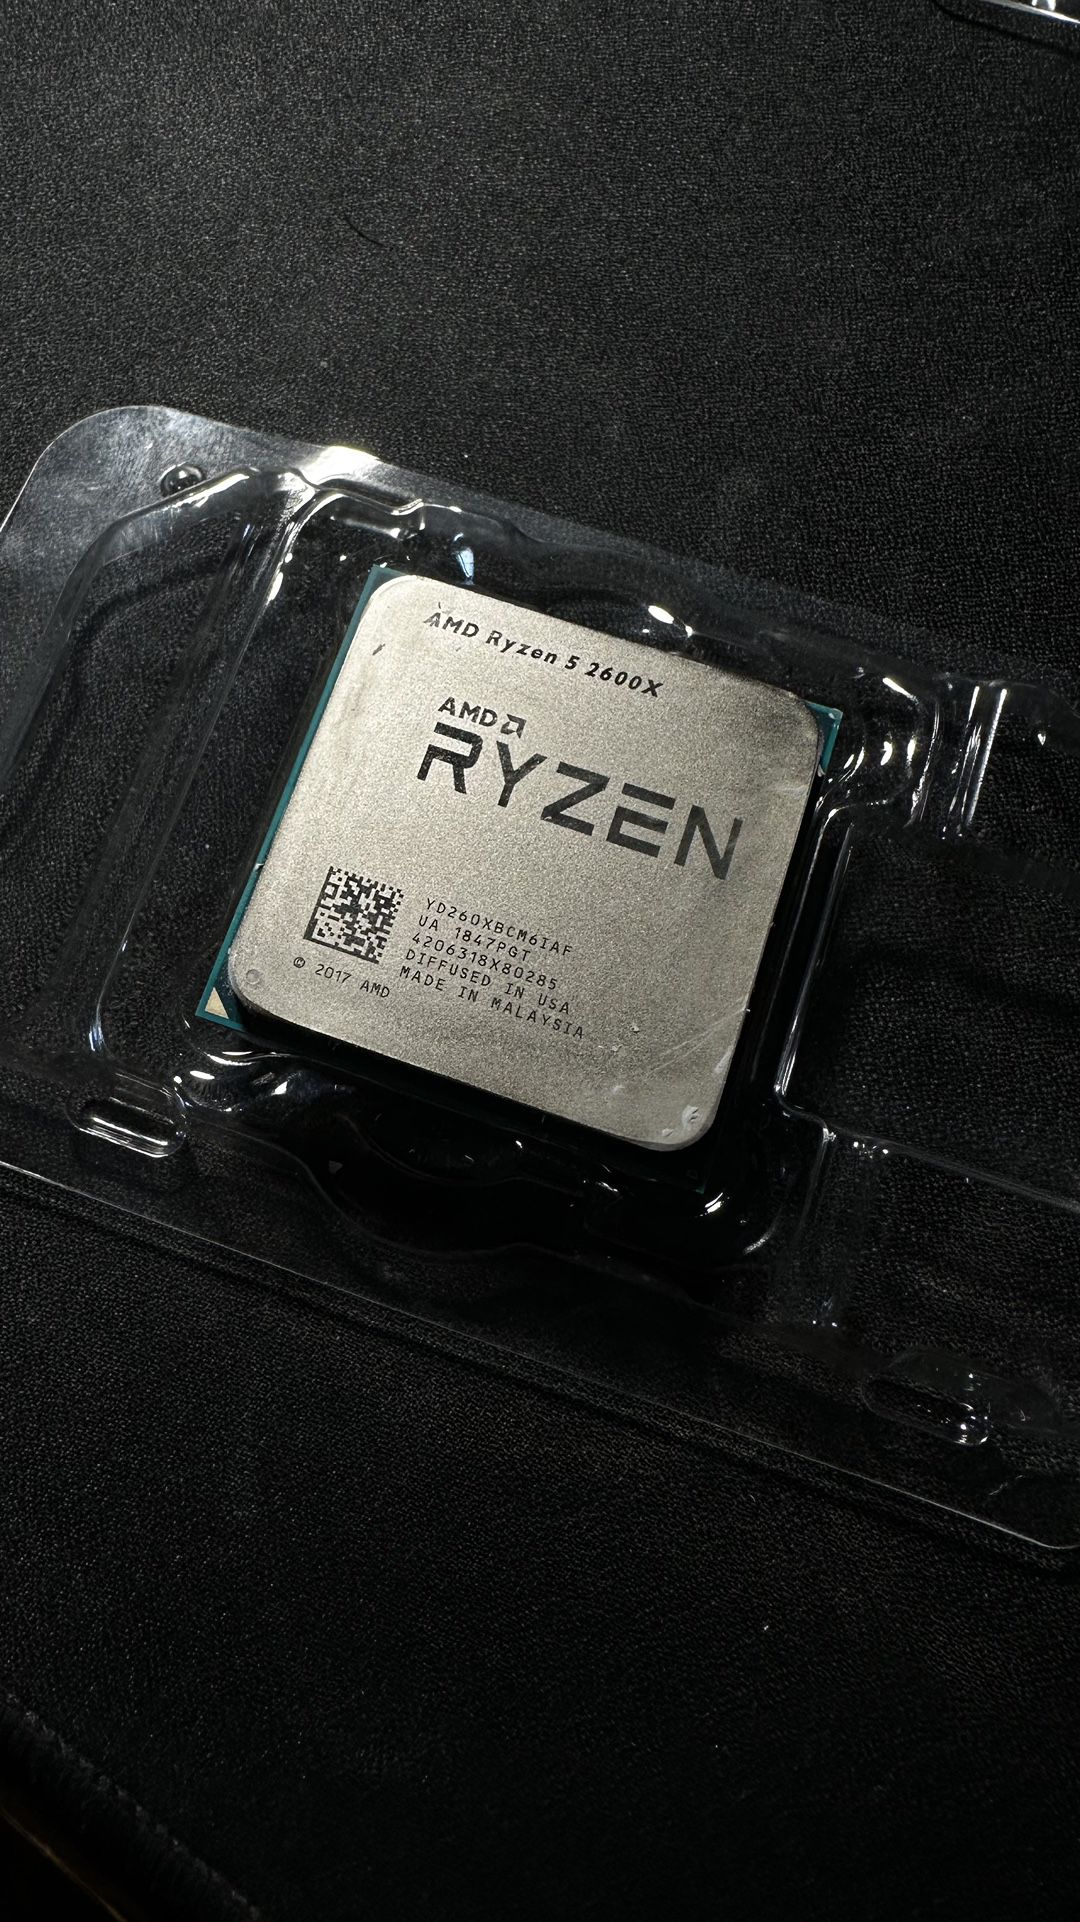 AMD RYZEN 5 2600X 6-CORE PROCESSOR